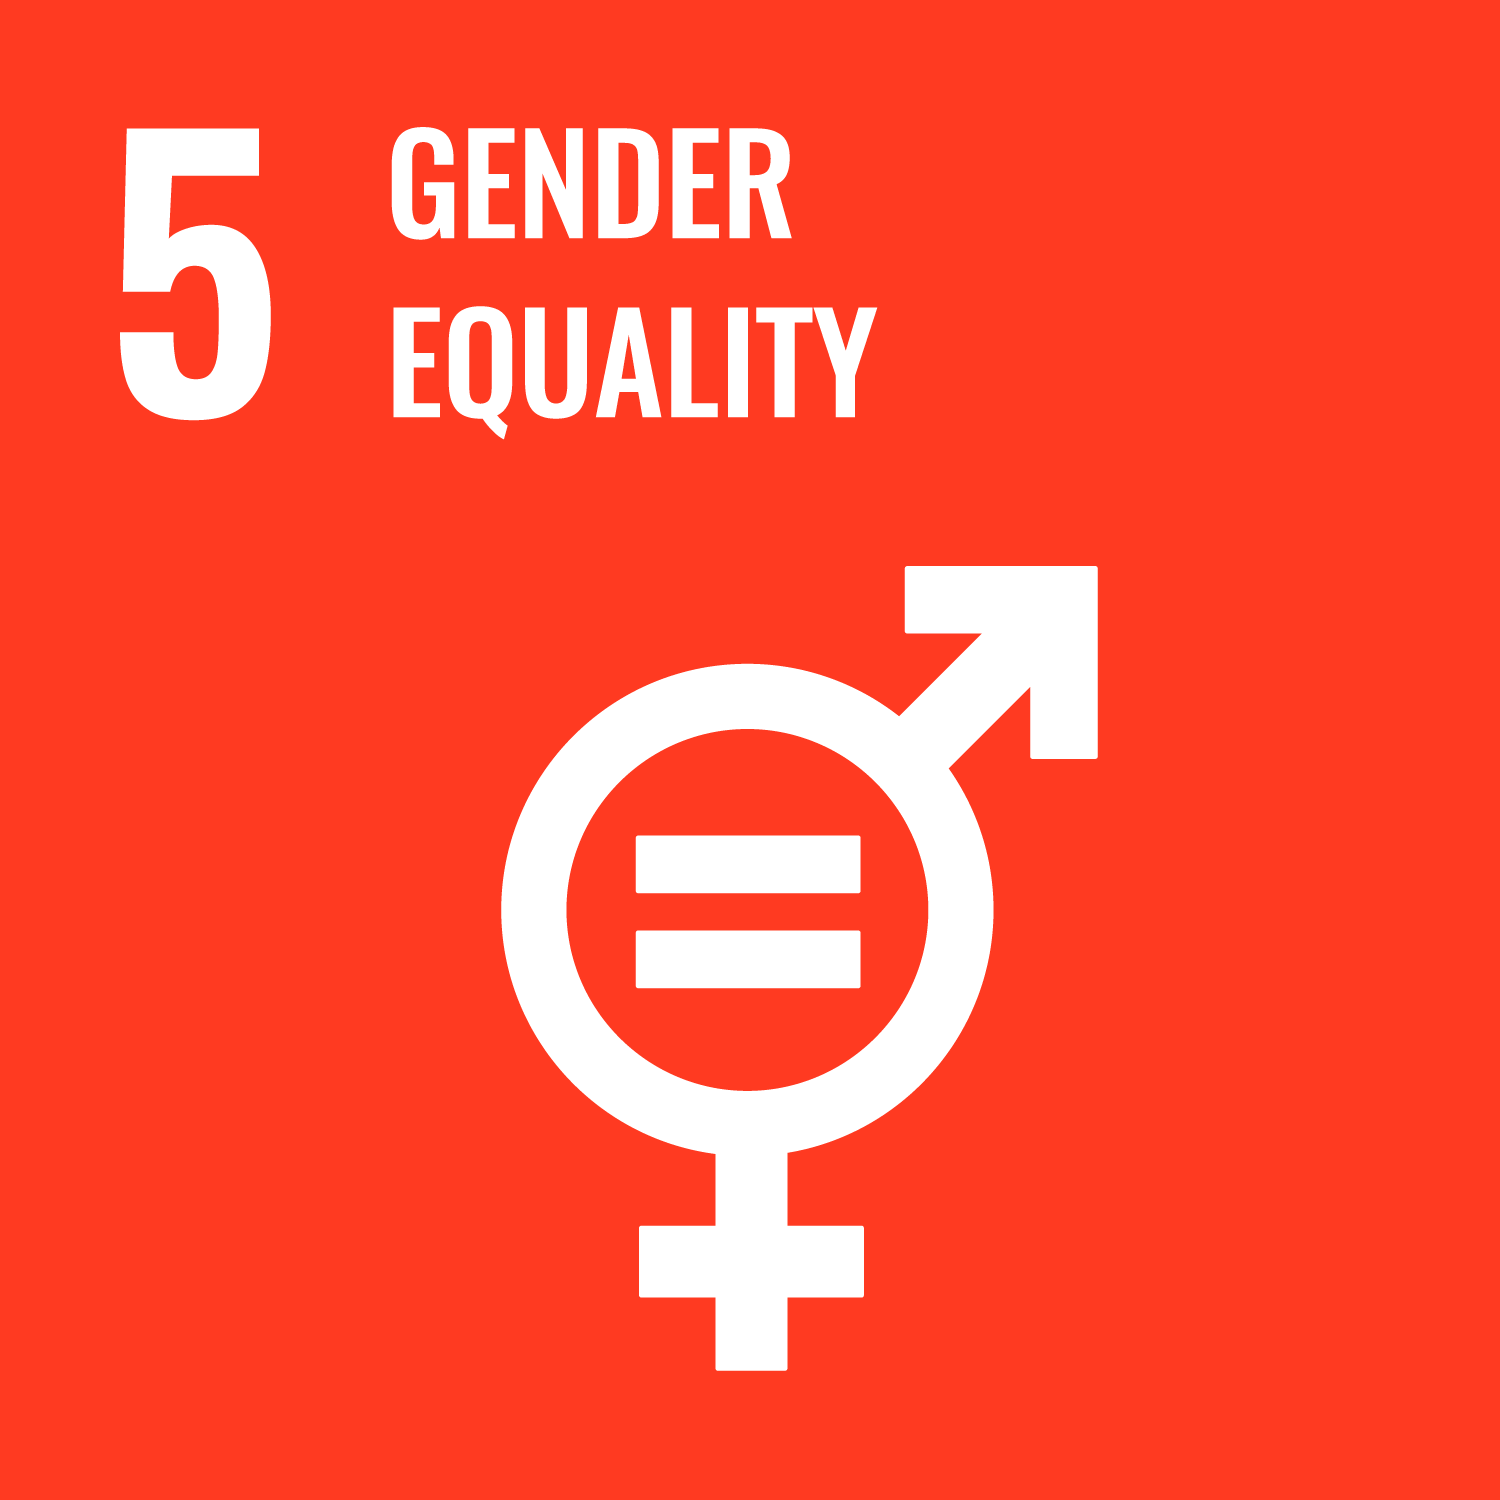 Goal 05 Gender Equality